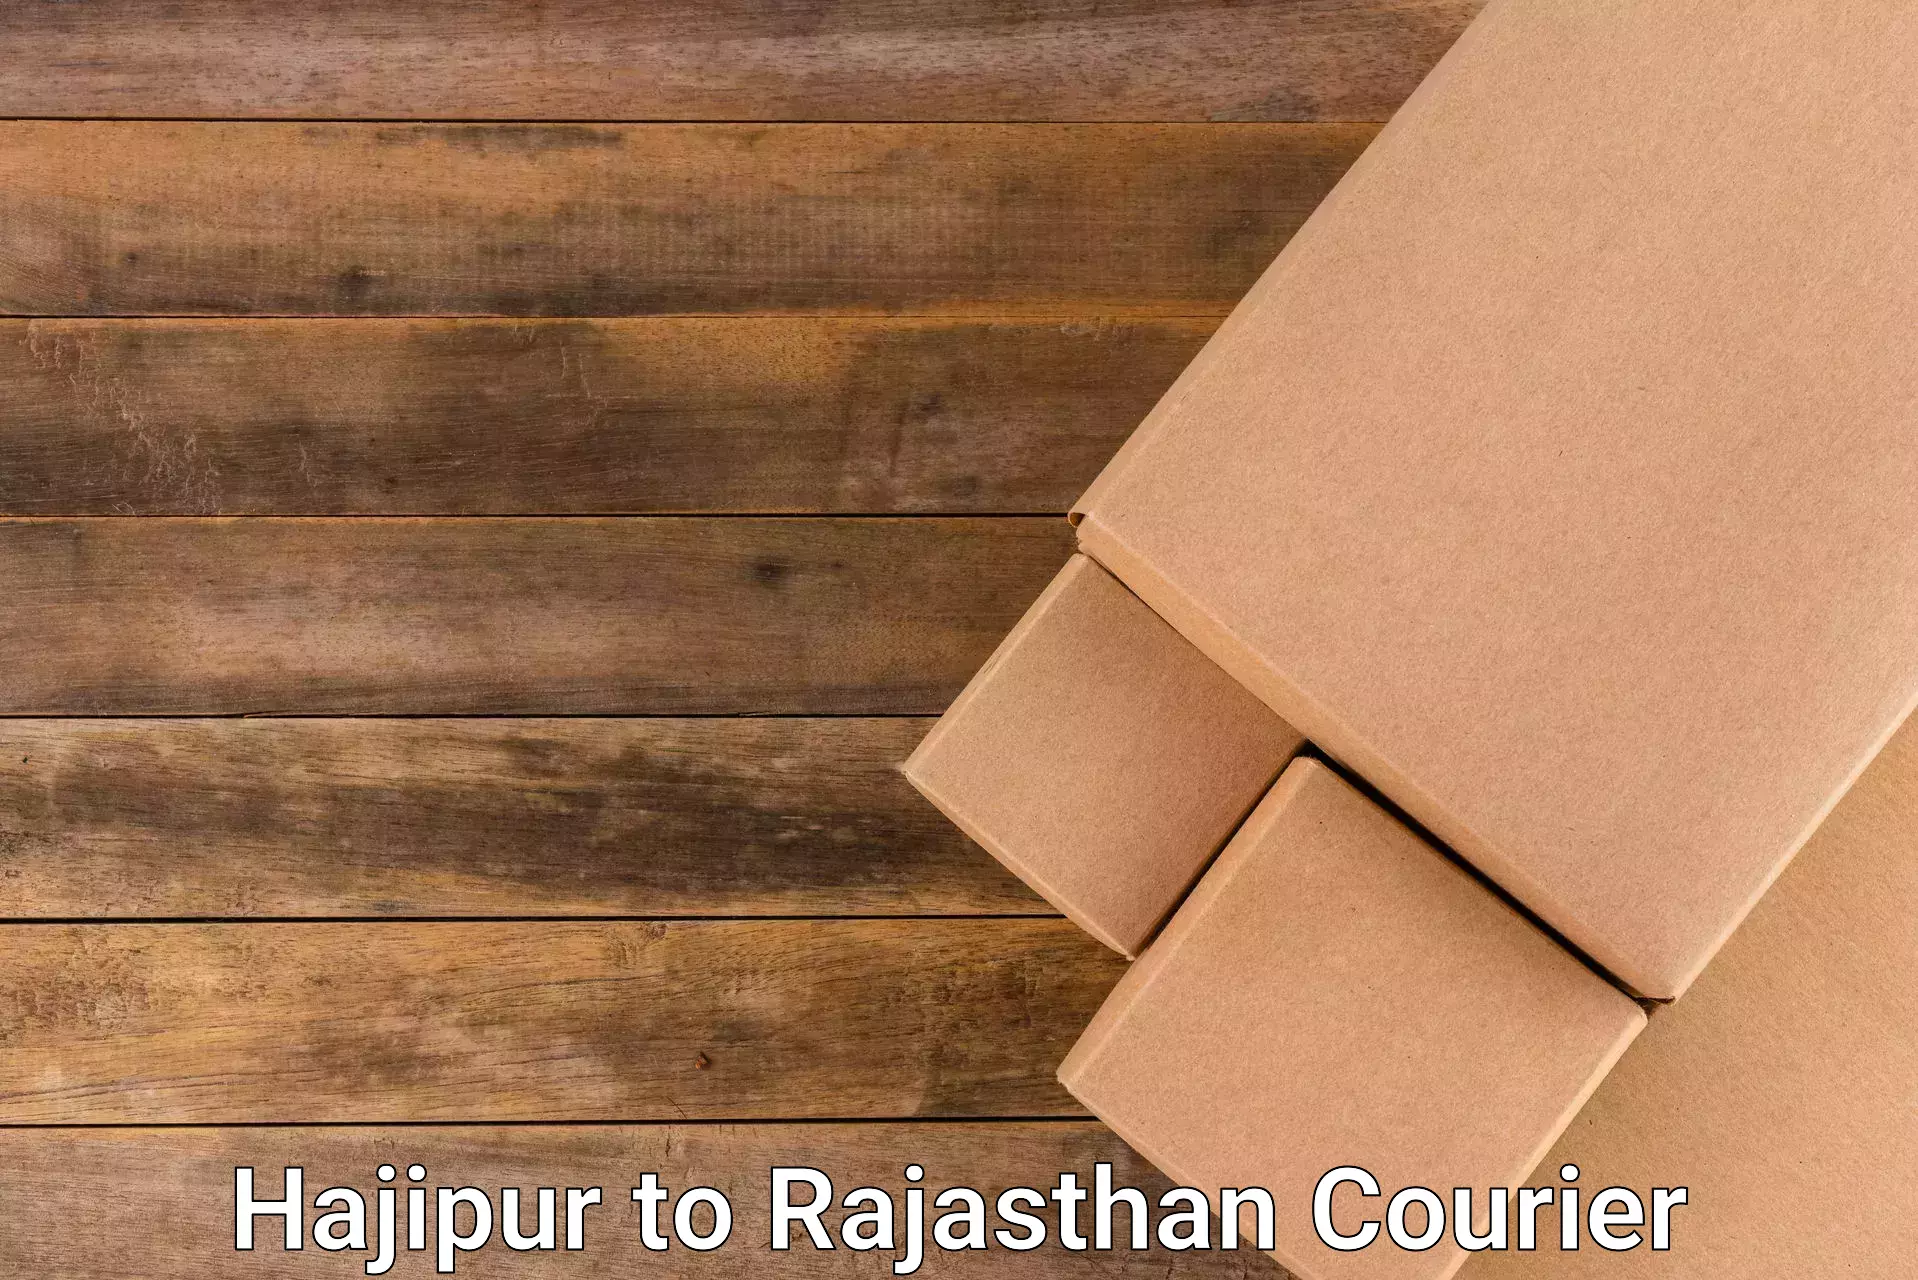 Courier service comparison Hajipur to Shrimadhopur